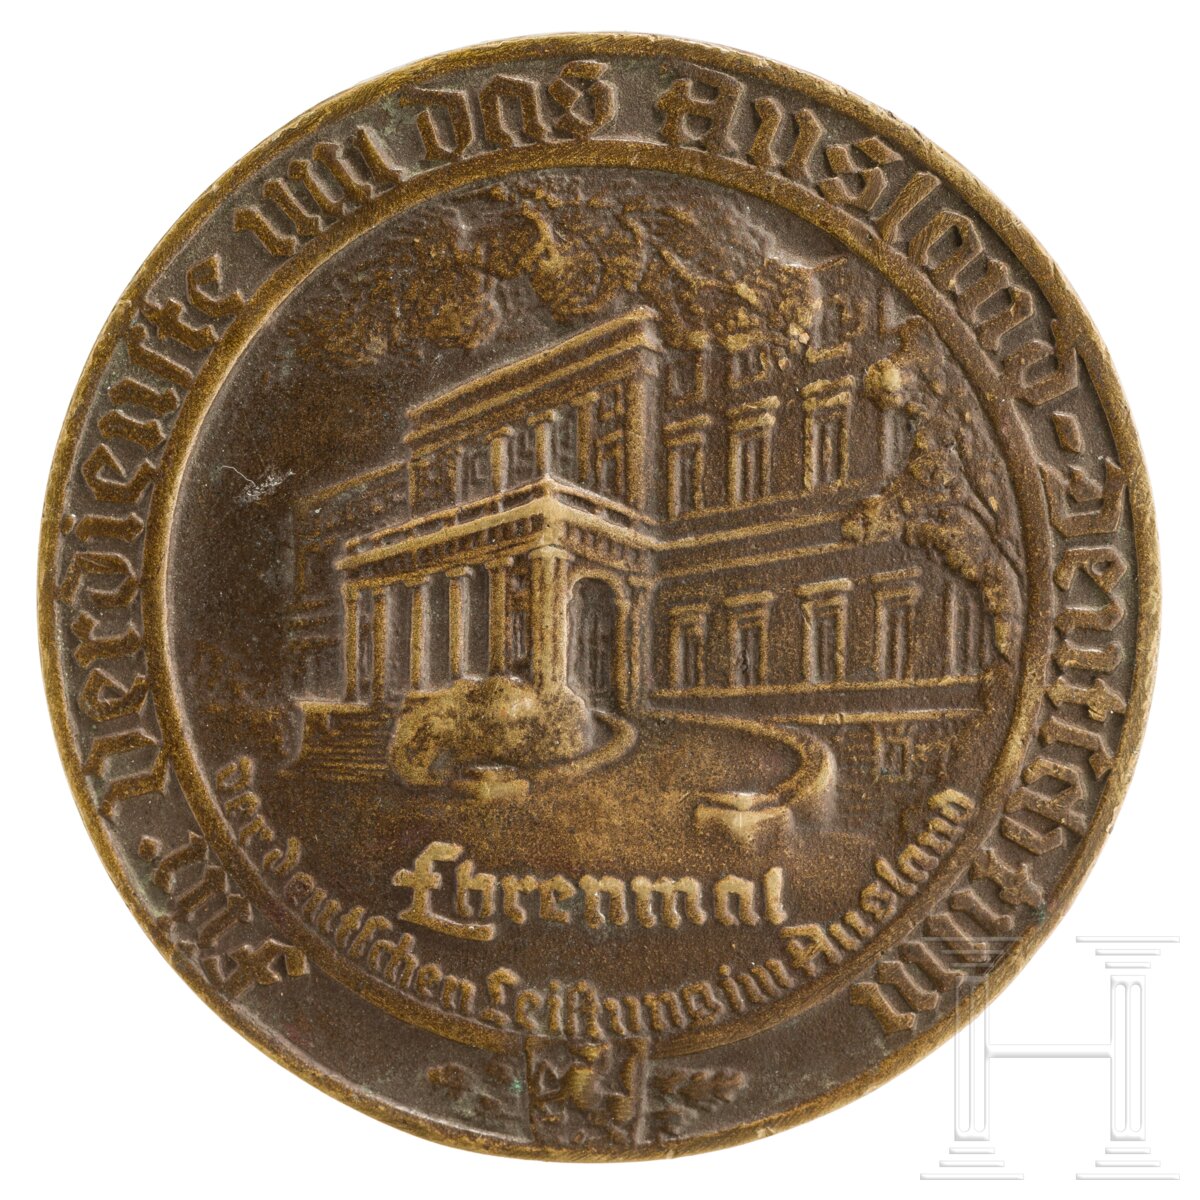 Medaille "Für Verdienste um das Auslands-Deutschtum" - Image 2 of 3